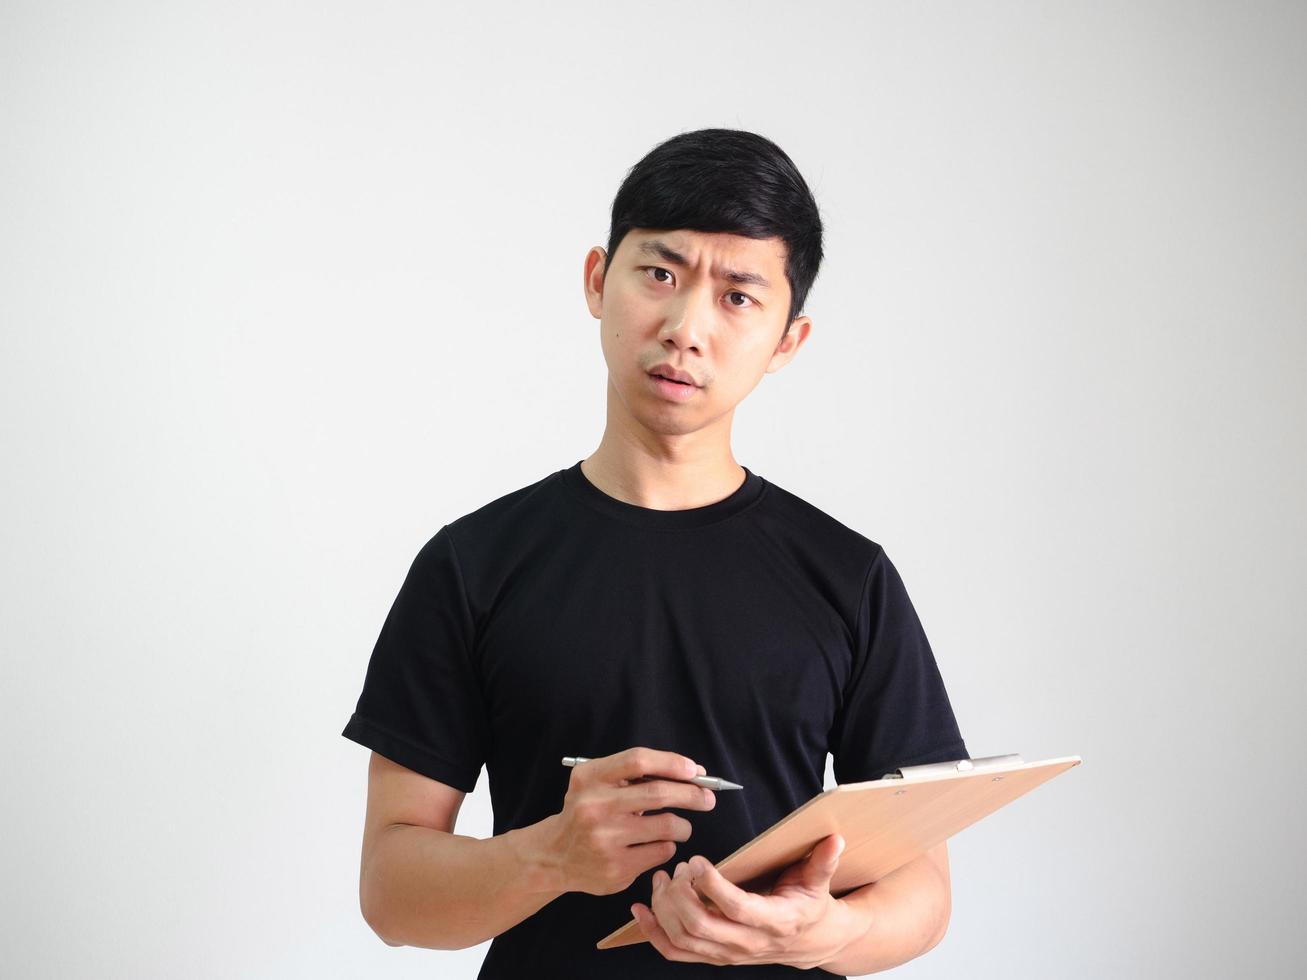 joven asiático sosteniendo portapapeles de madera y bolígrafo plateado en la mano cara seria mira la cámara en blanco aislado, concepto de trabajo foto